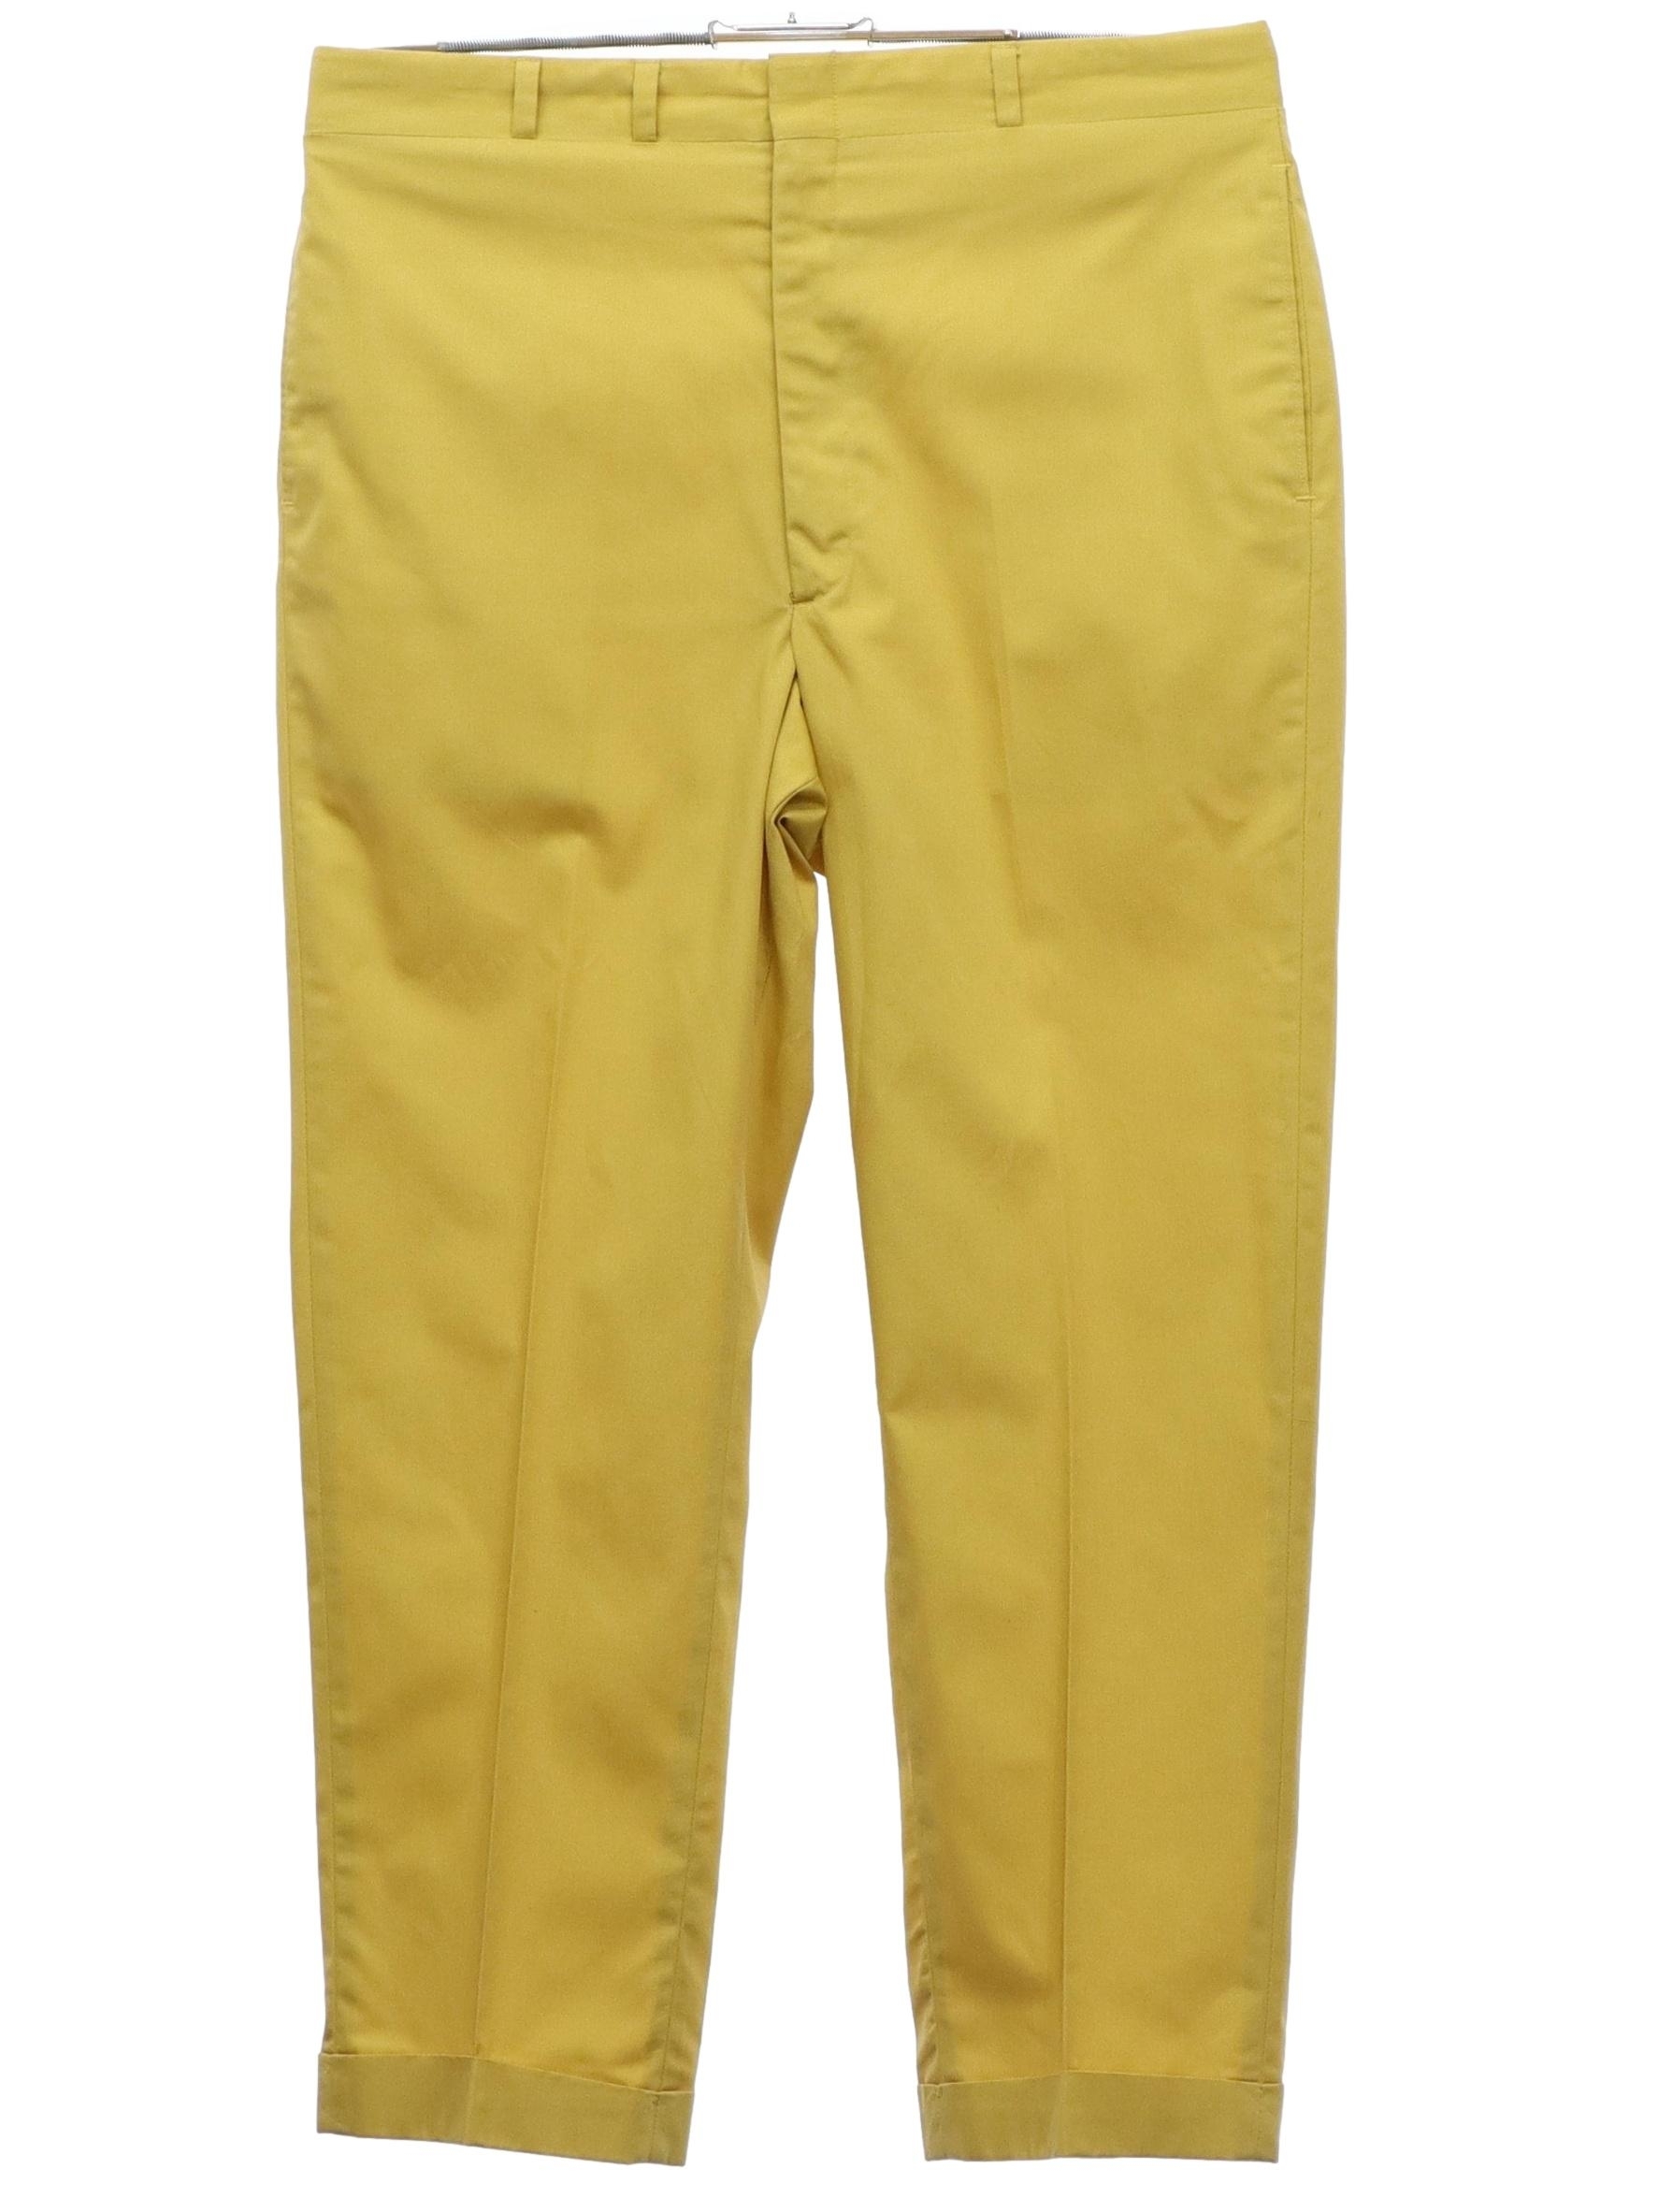 Haggar Mens Microfiber Casual Trouser Pants, Beige, 32W x 30L - Walmart.com